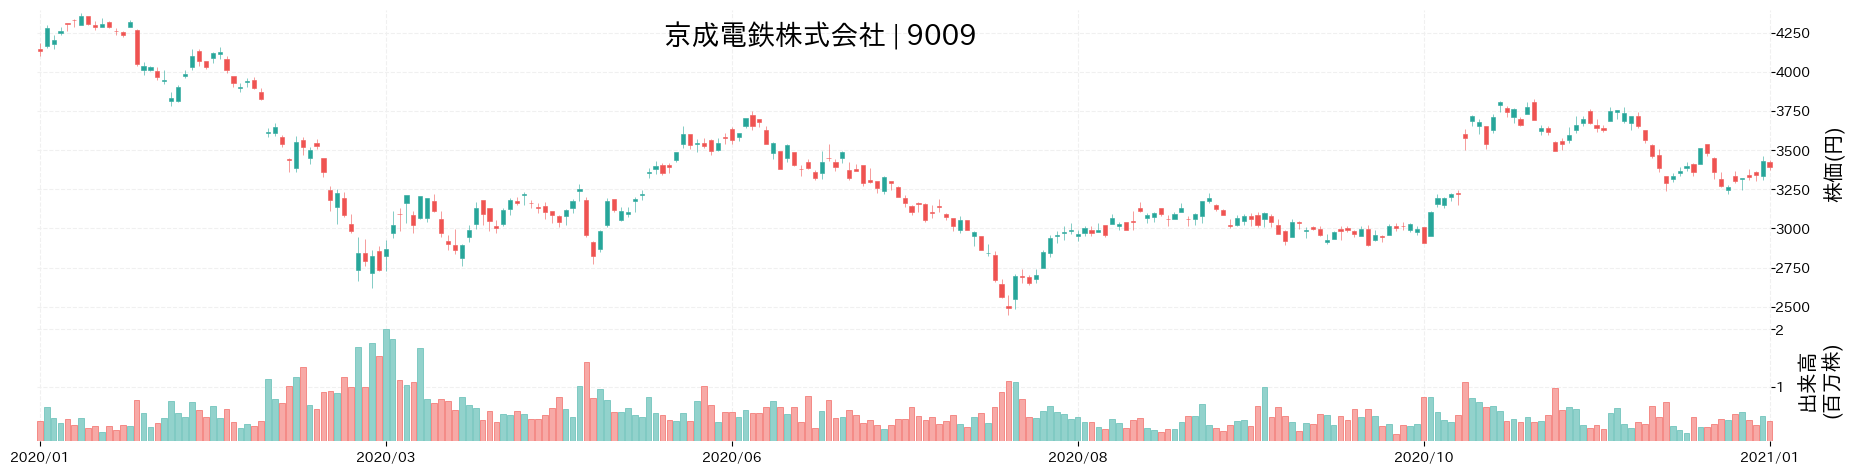 京成電鉄の株価推移(2020)